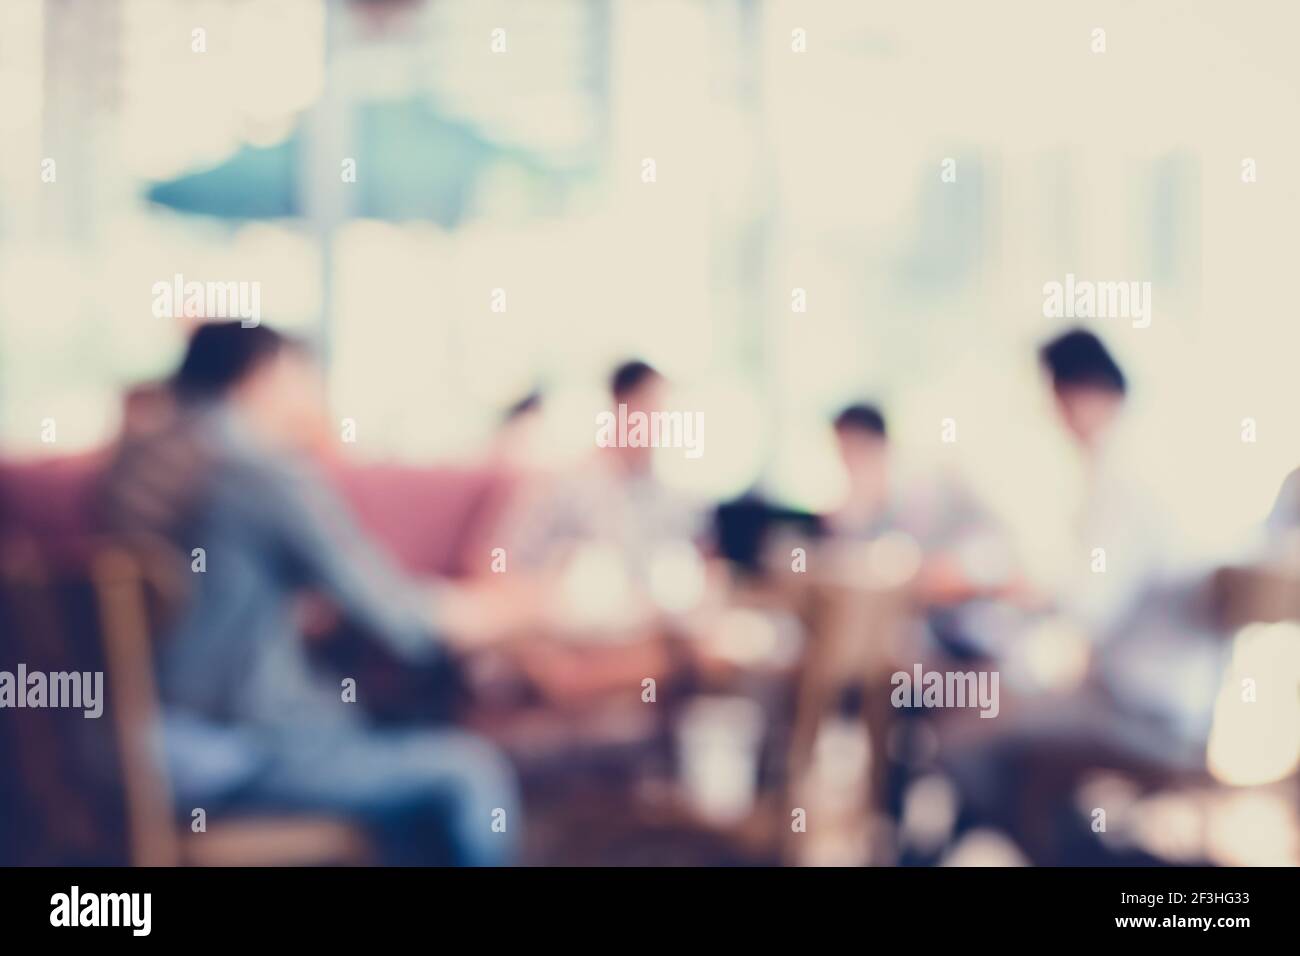 Leute sitzen im Coffee Shop, verschwommener Hintergrund - Vintage & Retro-Stil Farbeffekt Stockfoto